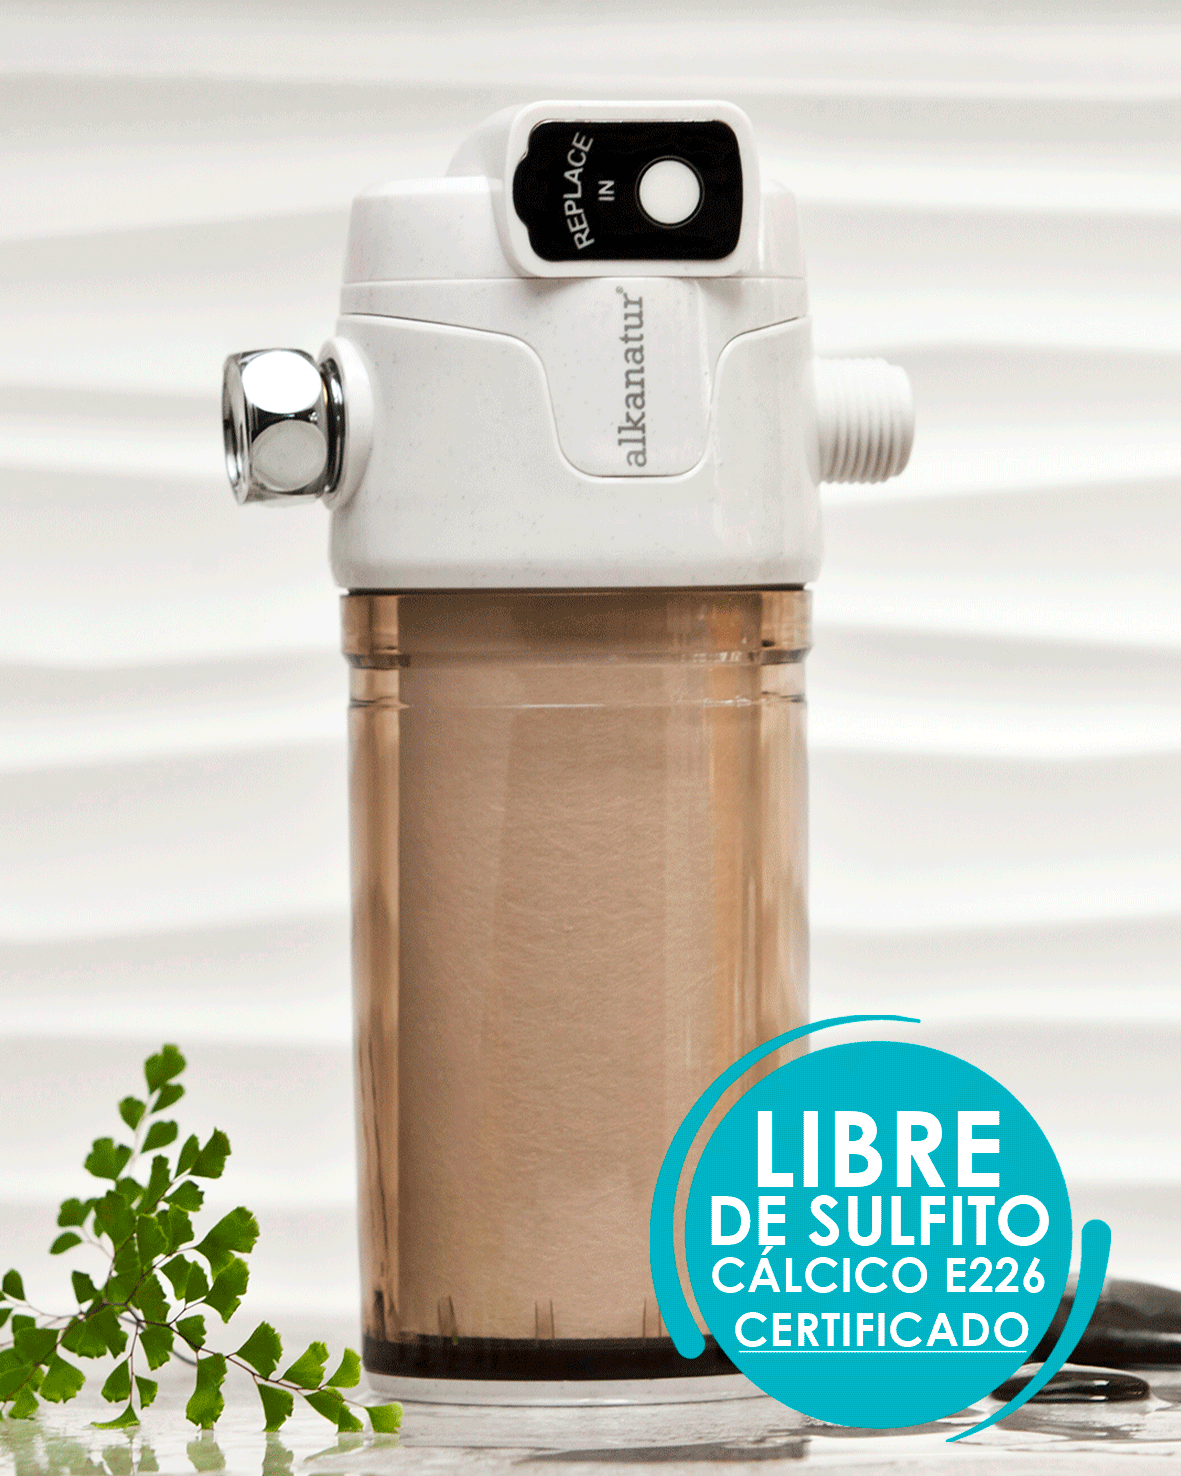 Instalación fácil filtro de ducha 🚿 recambiable Alkanatur de 50.000 L  #Shorts duchas sin cloro 🚿 